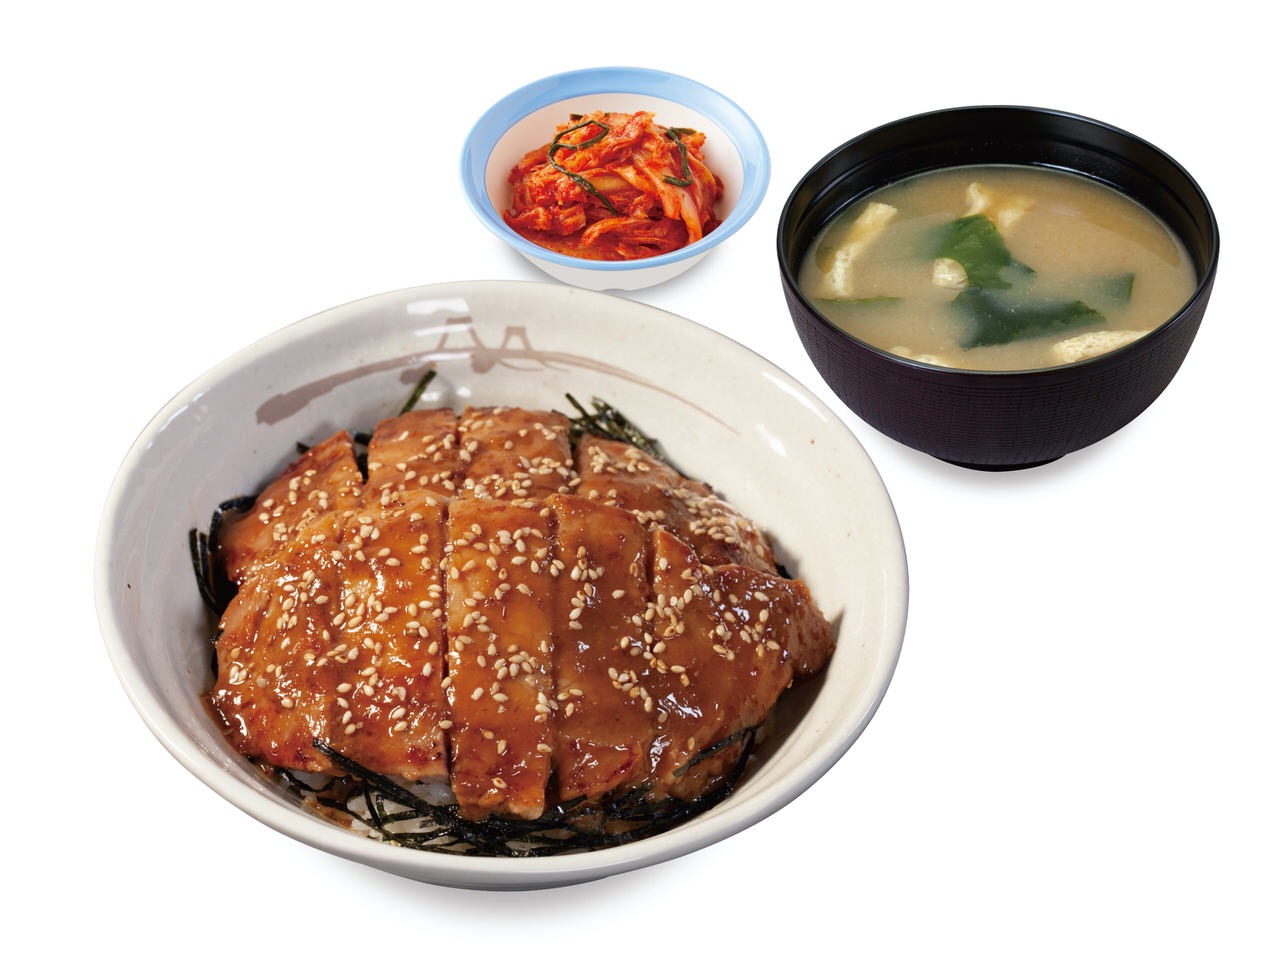 【松屋】特製味噌ダレに漬け込んだ豚ロース2枚のせ「味噌漬けトンテキ丼」9月8日より発売開始